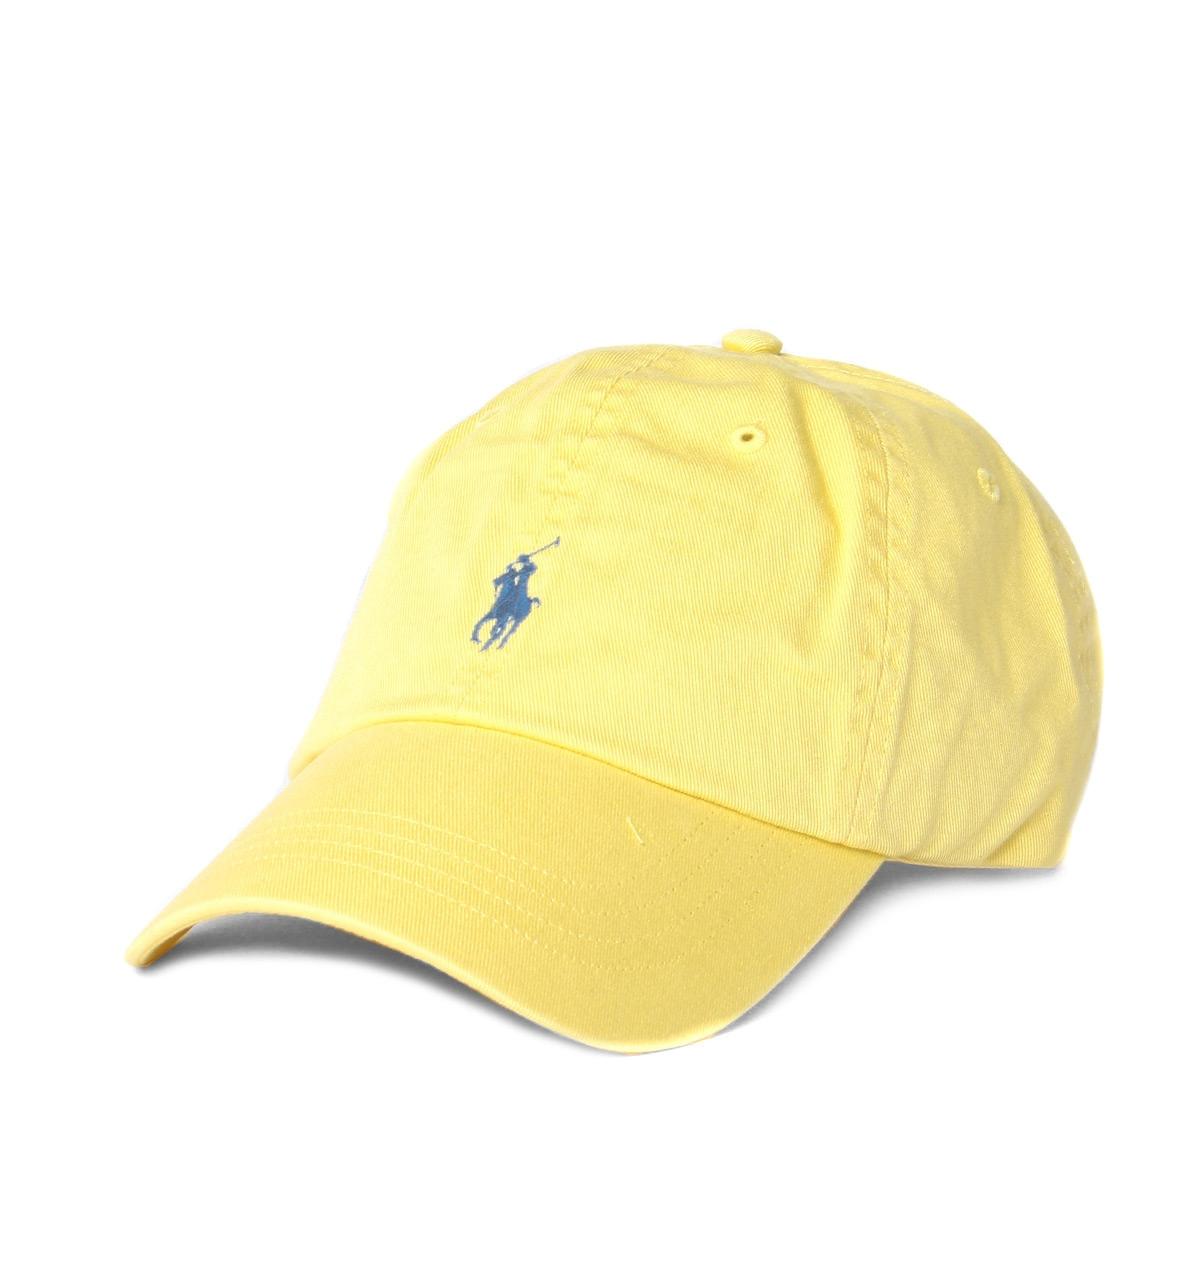 polo ralph lauren yellow cap